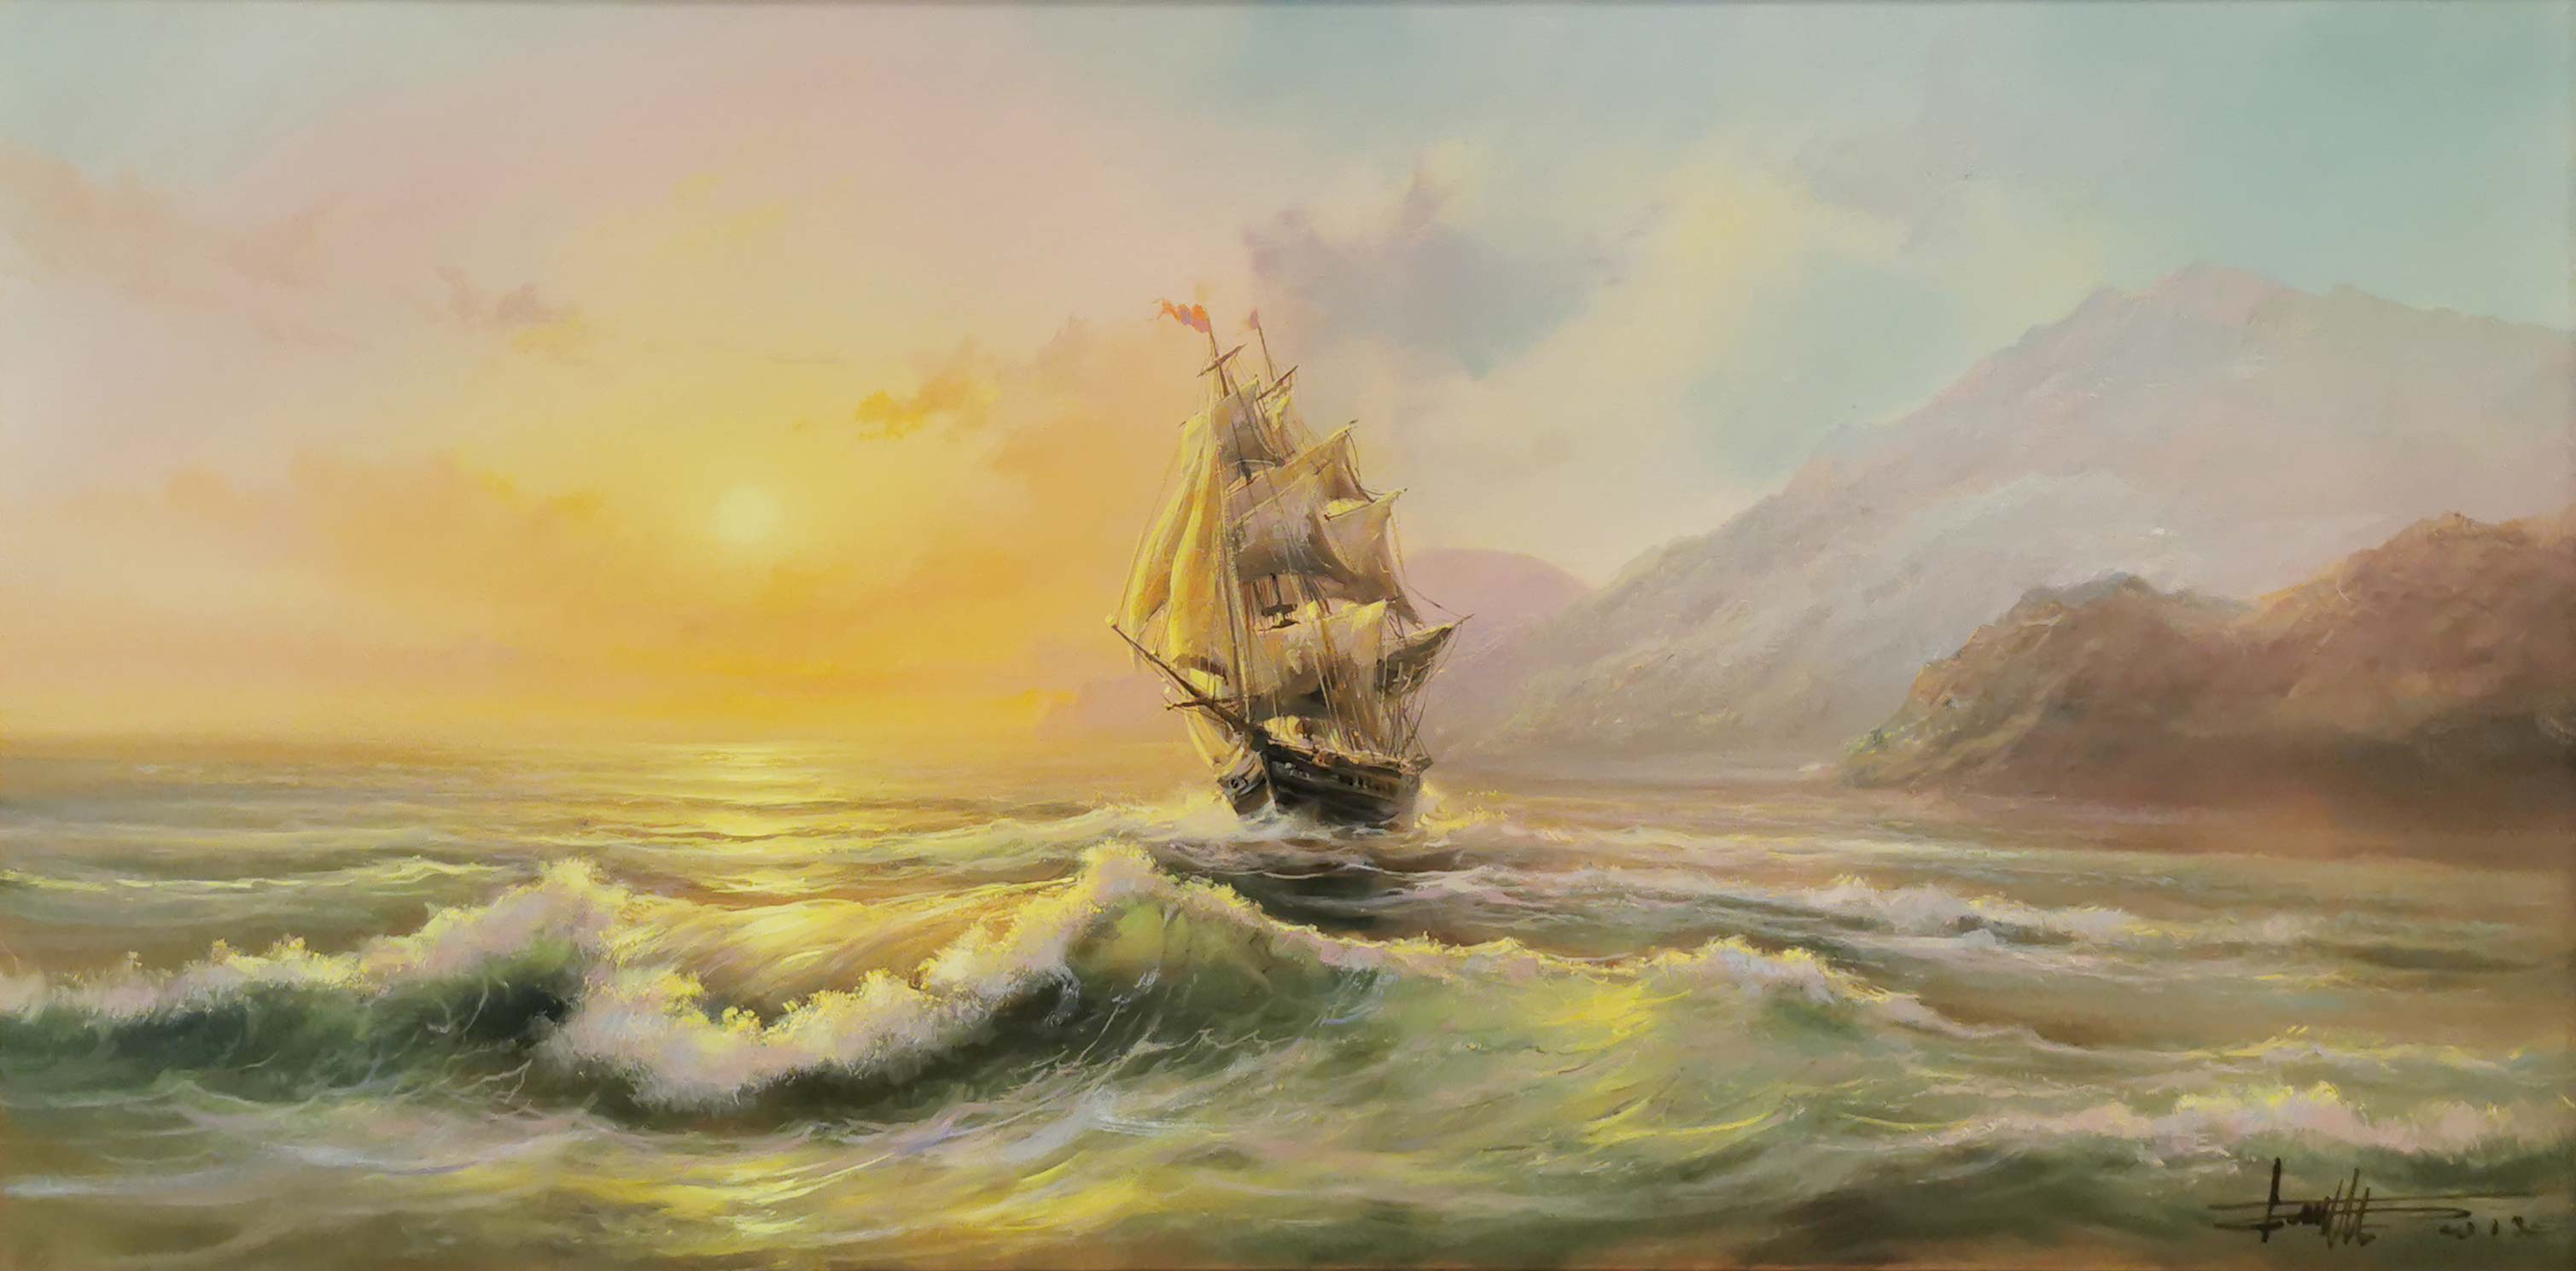 Seascape - 1, Dmitry Balakhonov, Buy the painting Oil